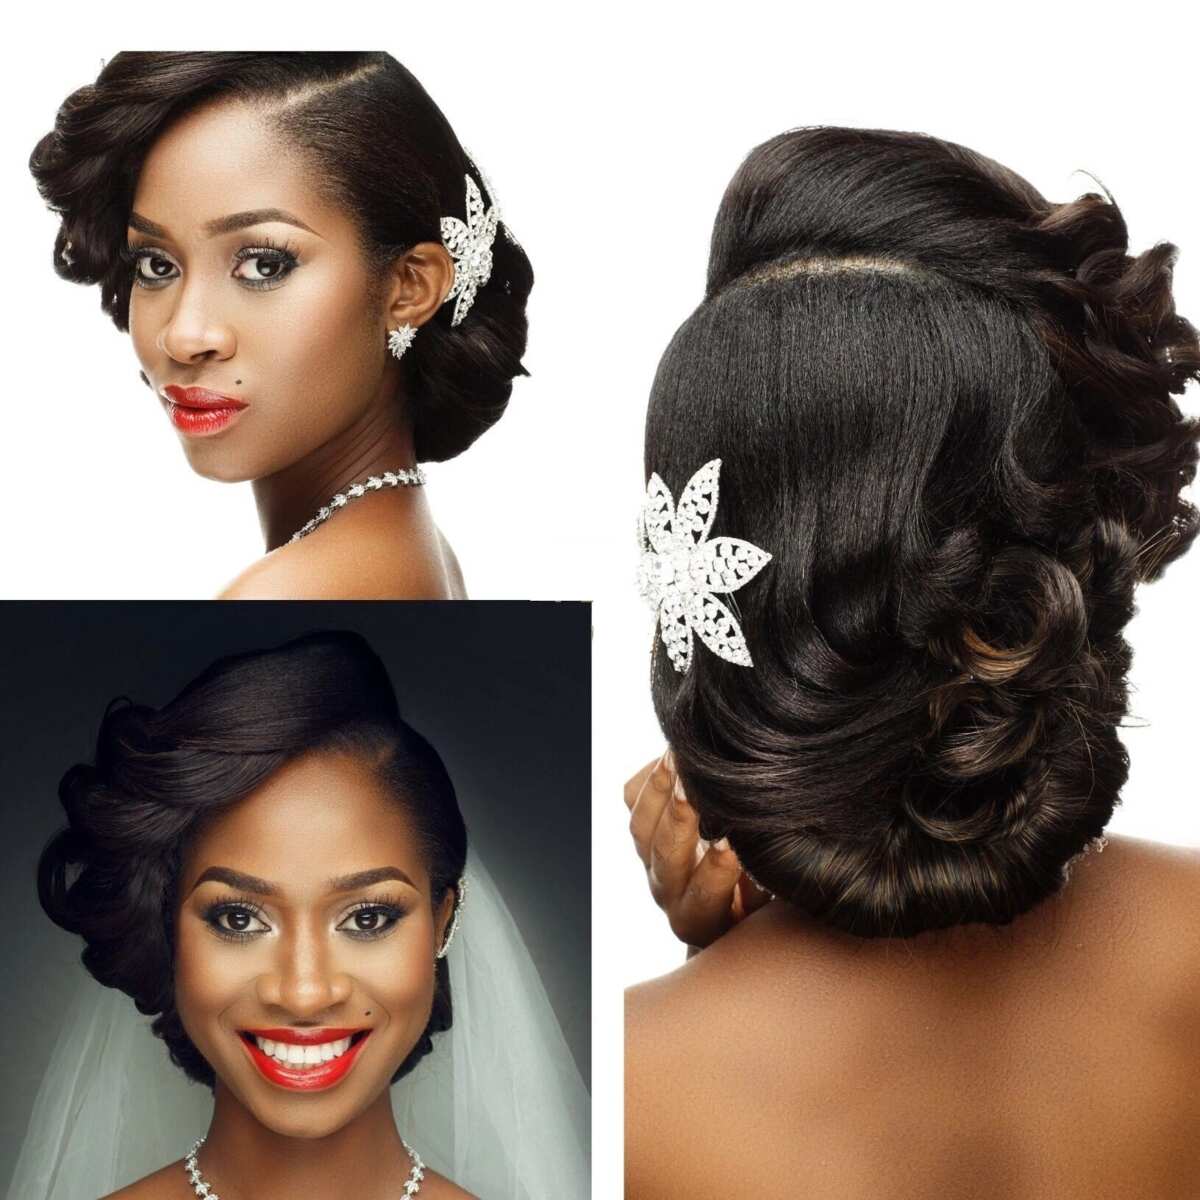 Hair Style For Wedding | शादी के लिए हेयर स्टाइल | Easy Hair Style For  Wedding Function | latest hair style for bride sister | HerZindagi